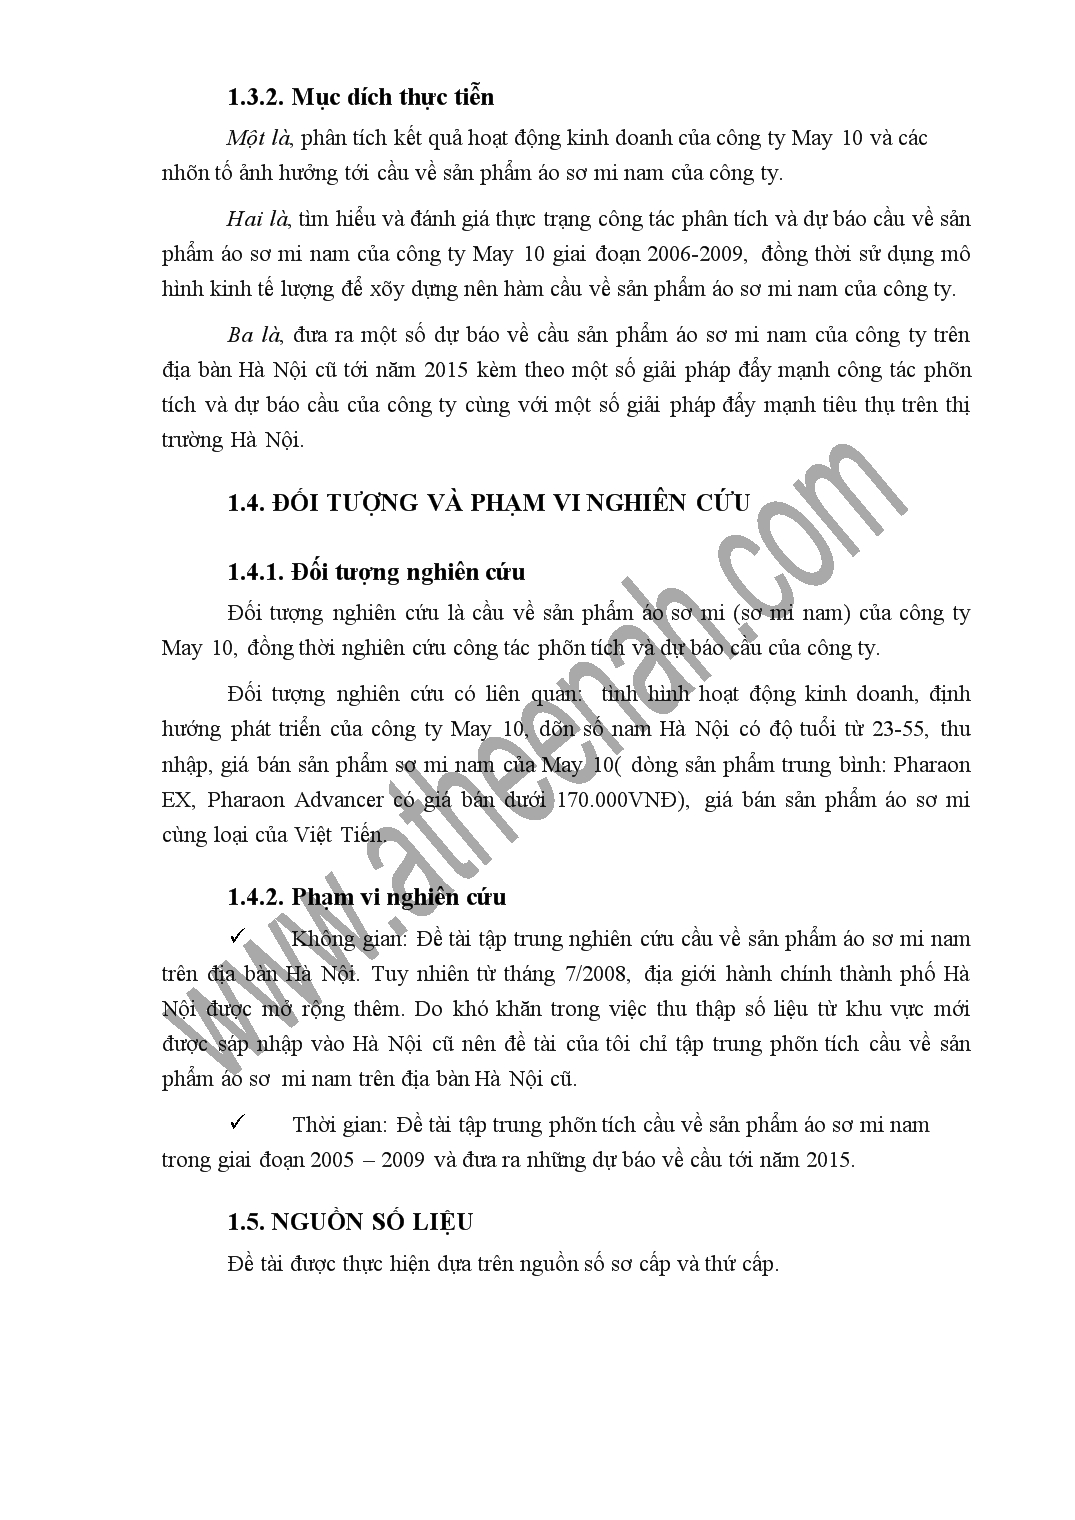 Luận văn Phân tích và dự báo cầu sản phẩm áo sơ mi nam của công ty cổ phần May 10 trên địa bàn Hà Nội tới năm 2015 trang 3